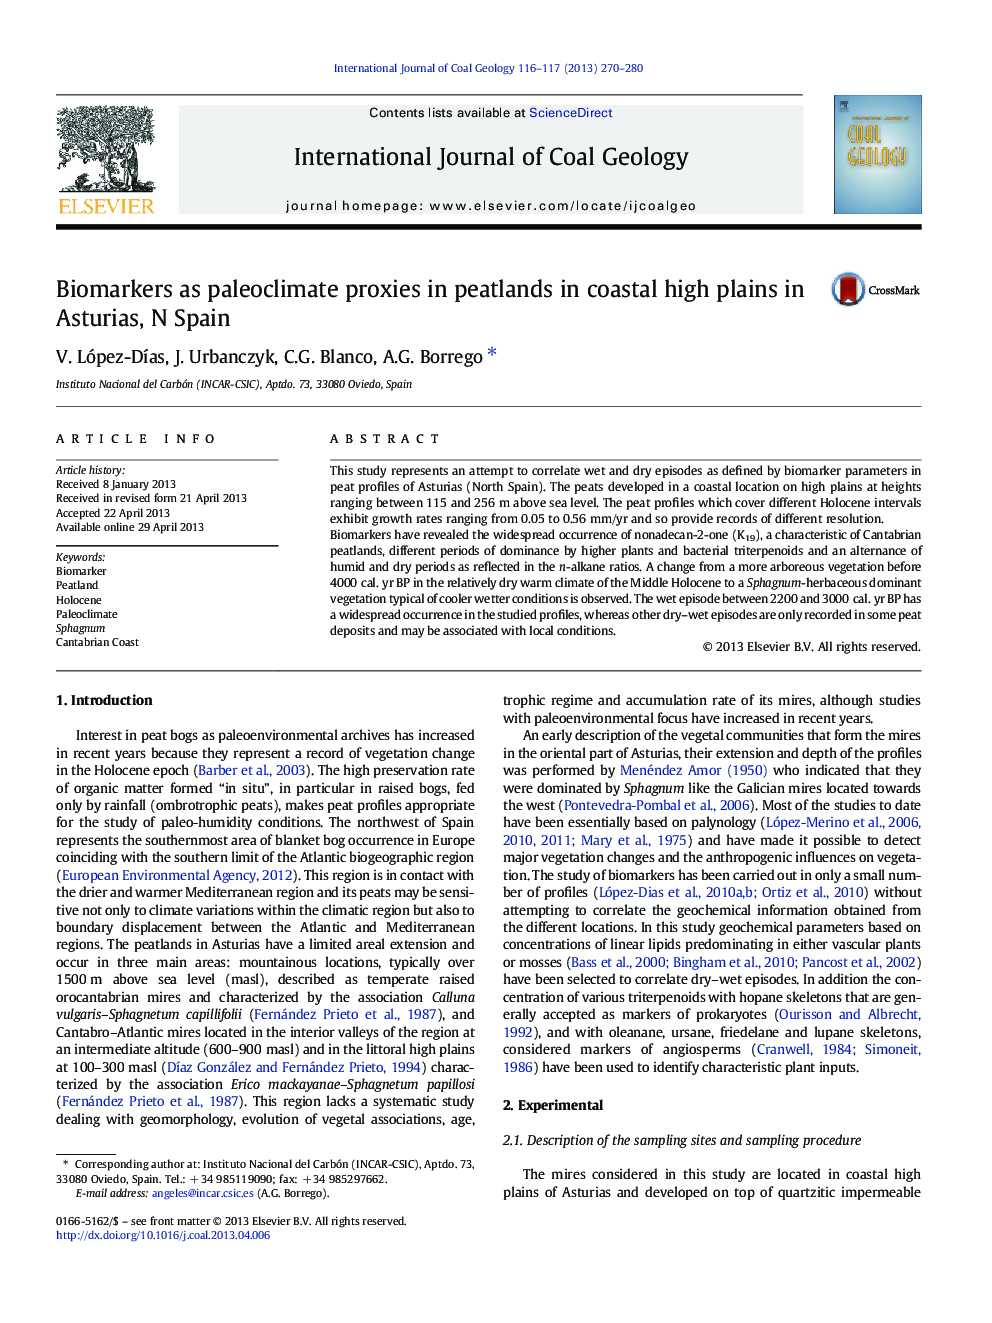 Biomarkers as paleoclimate proxies in peatlands in coastal high plains in Asturias, N Spain